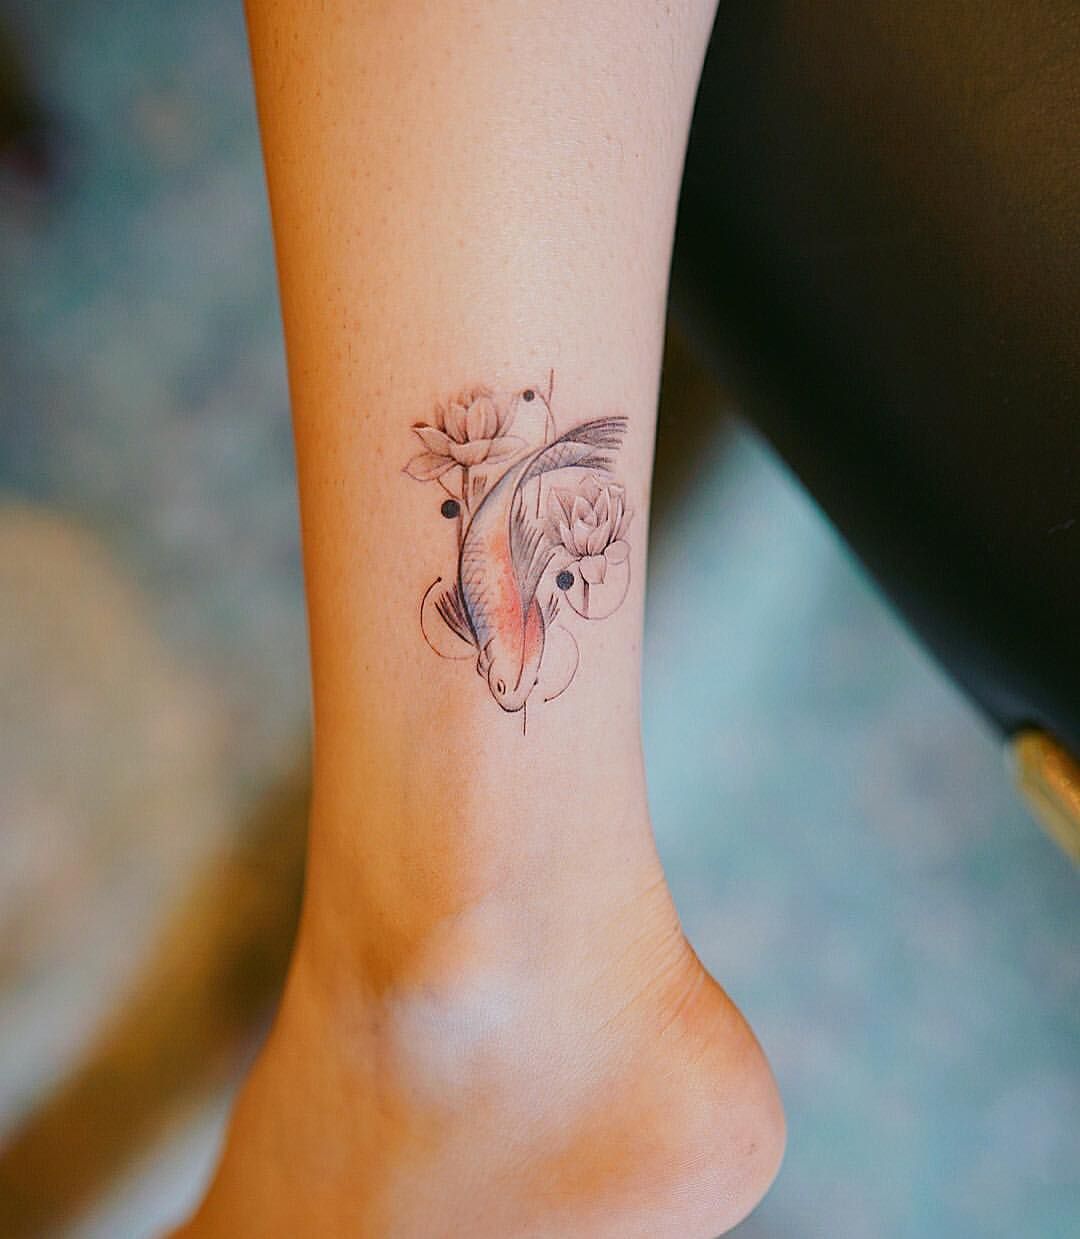 diseños de tatuajes japoneses con elementos típicos, pequeño tatuaje en la pierna con pez Koi, diseños de tattoos unicos 